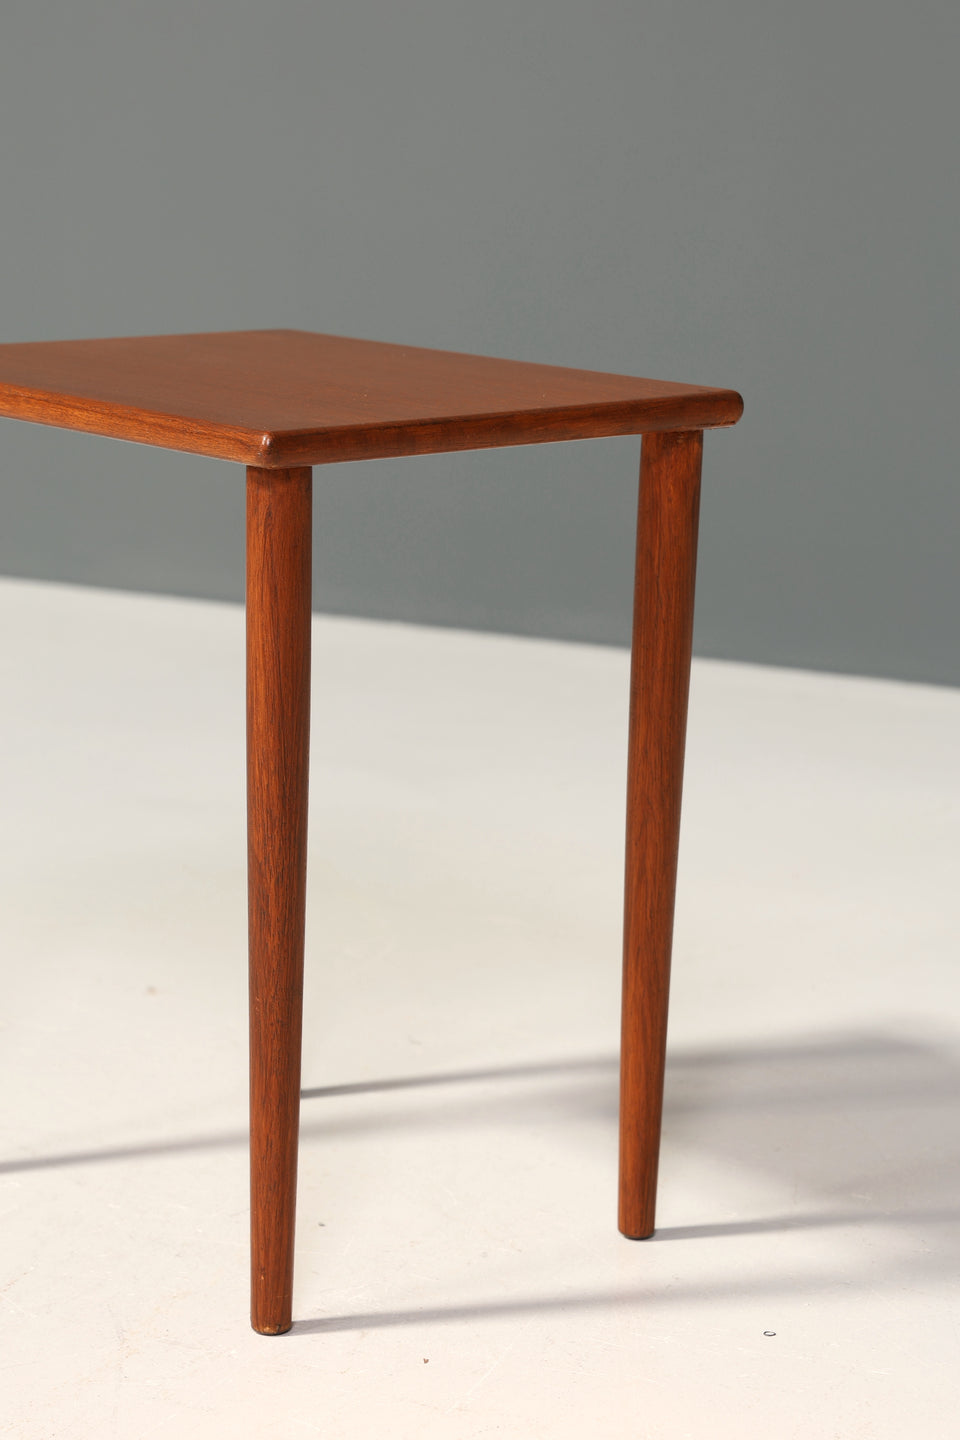 Schlichter Mid Century Teak Holz Beistelltisch "Made in Denmark" Tisch Ablagetisch